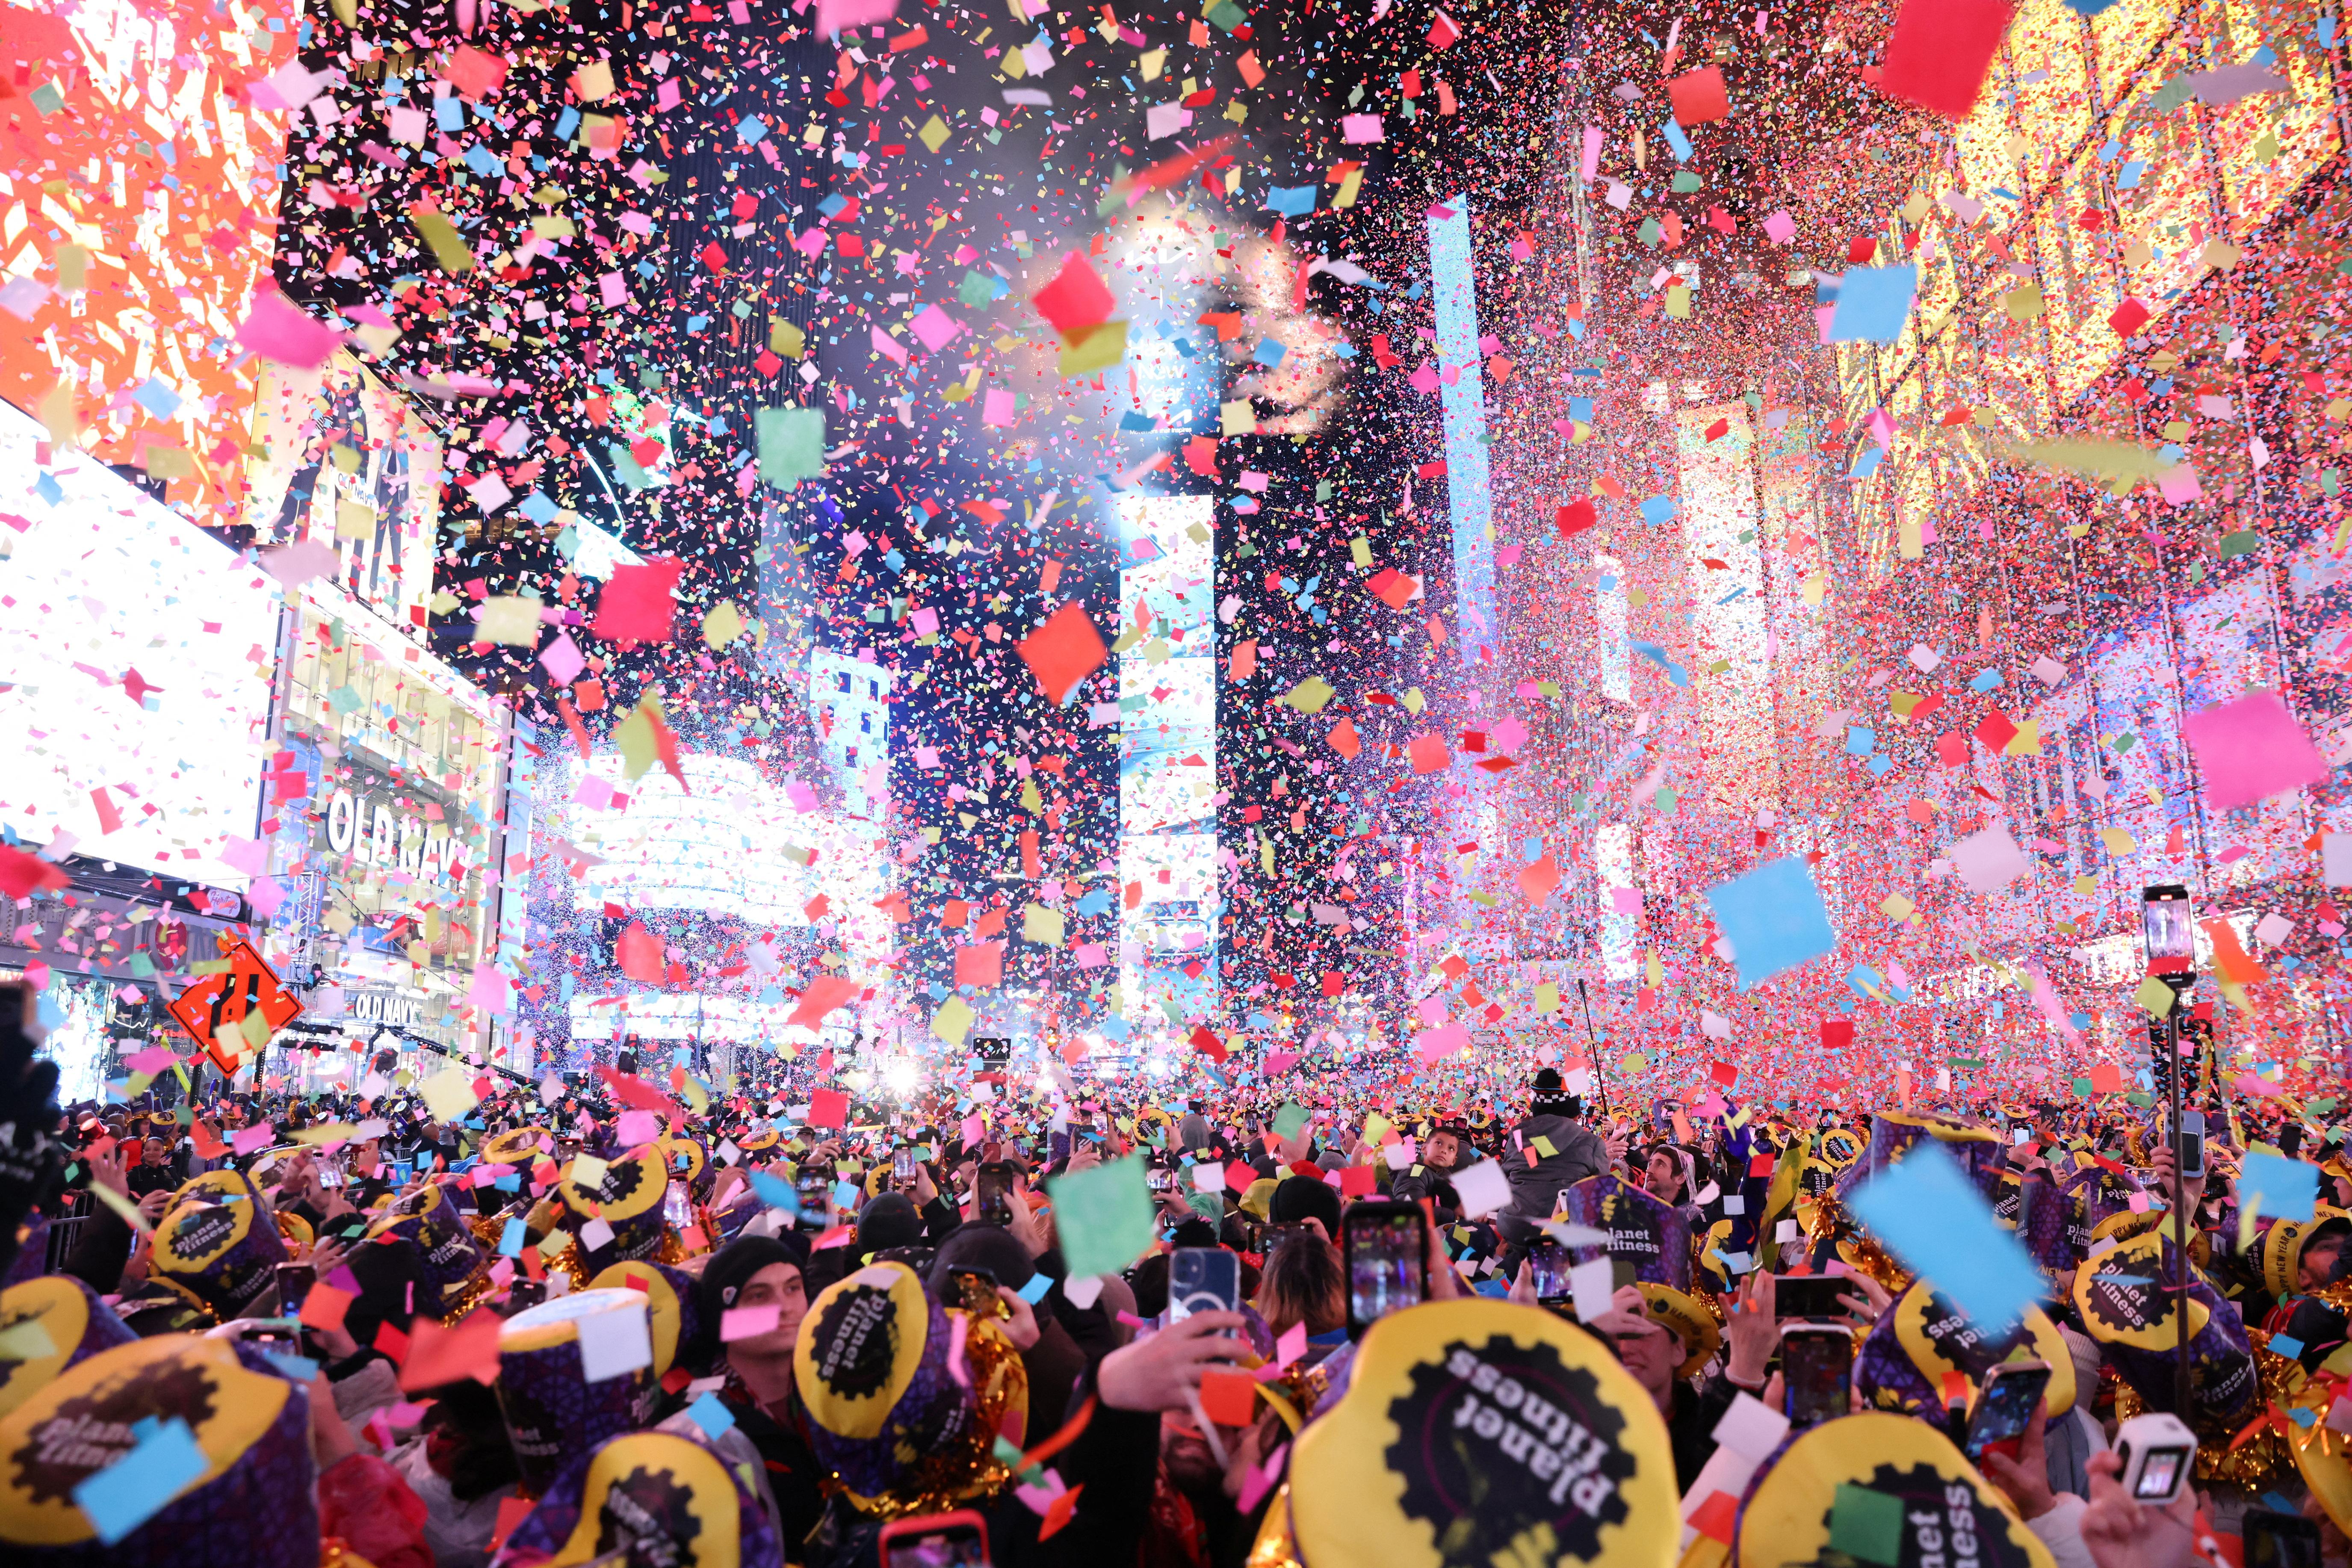 Hoa giấy bay rợp trời sau khi đồng hồ điểm thời khắc đầu tiên của năm mới 2023 trong sự kiện đón năm mới không hạn chế đầu tiên kể từ khi đại dịch Covid-19 bùng phát, Quảng trường Thời đại, Manhattan, New York, ngày 1/1/2023. (Ảnh: Reuters)